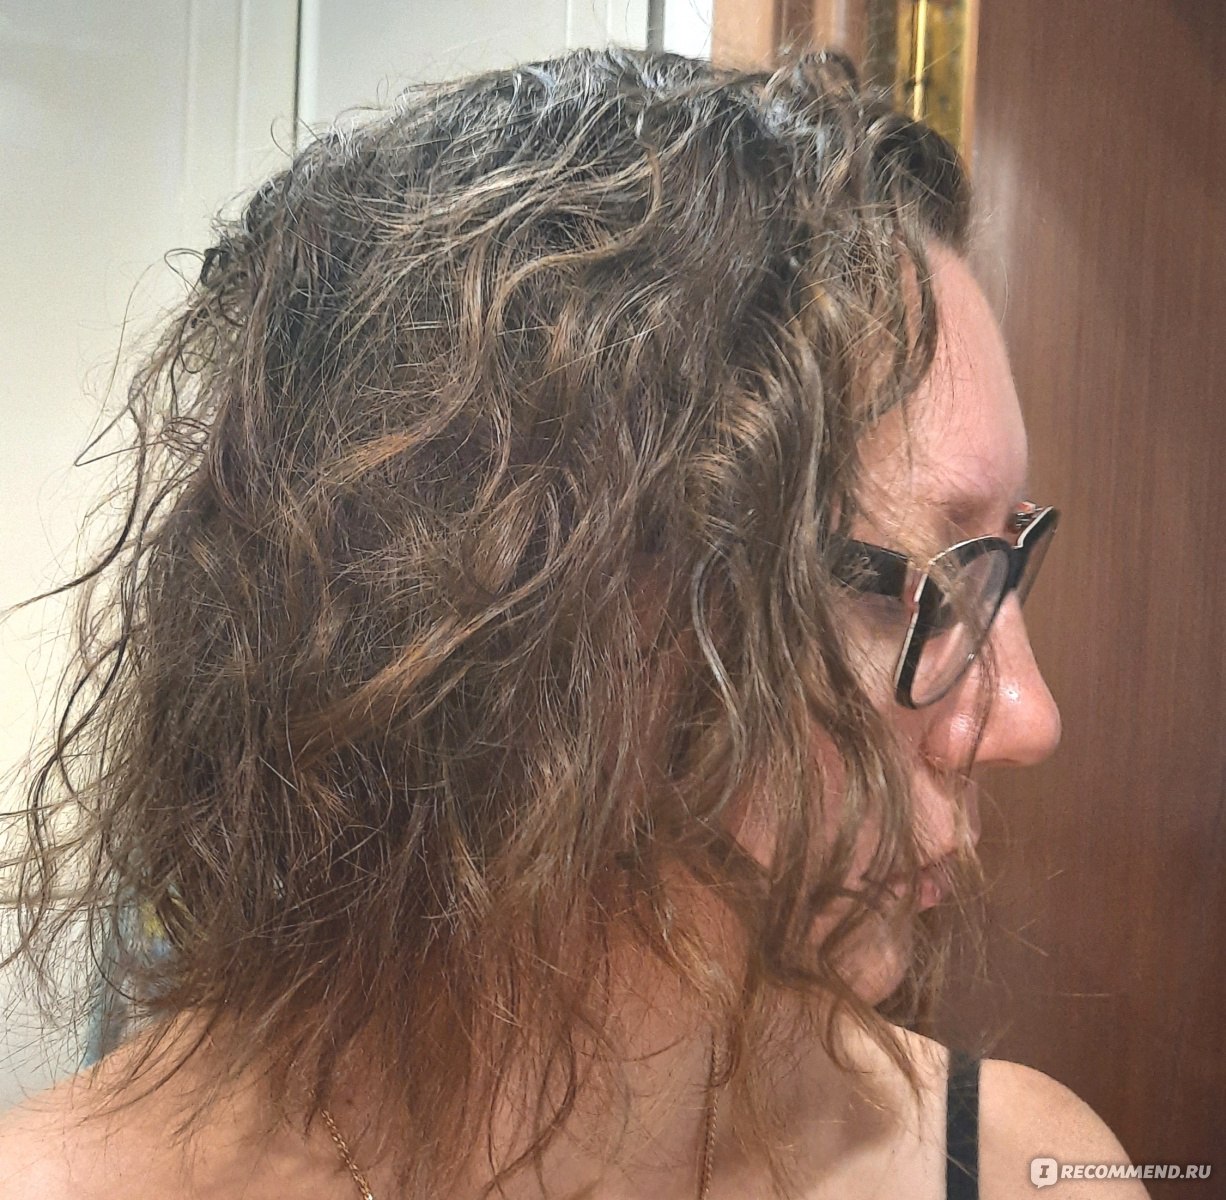 Шампунь MIXIT Hunny Bunny Shampoo Питательный для ослабленных волос фото